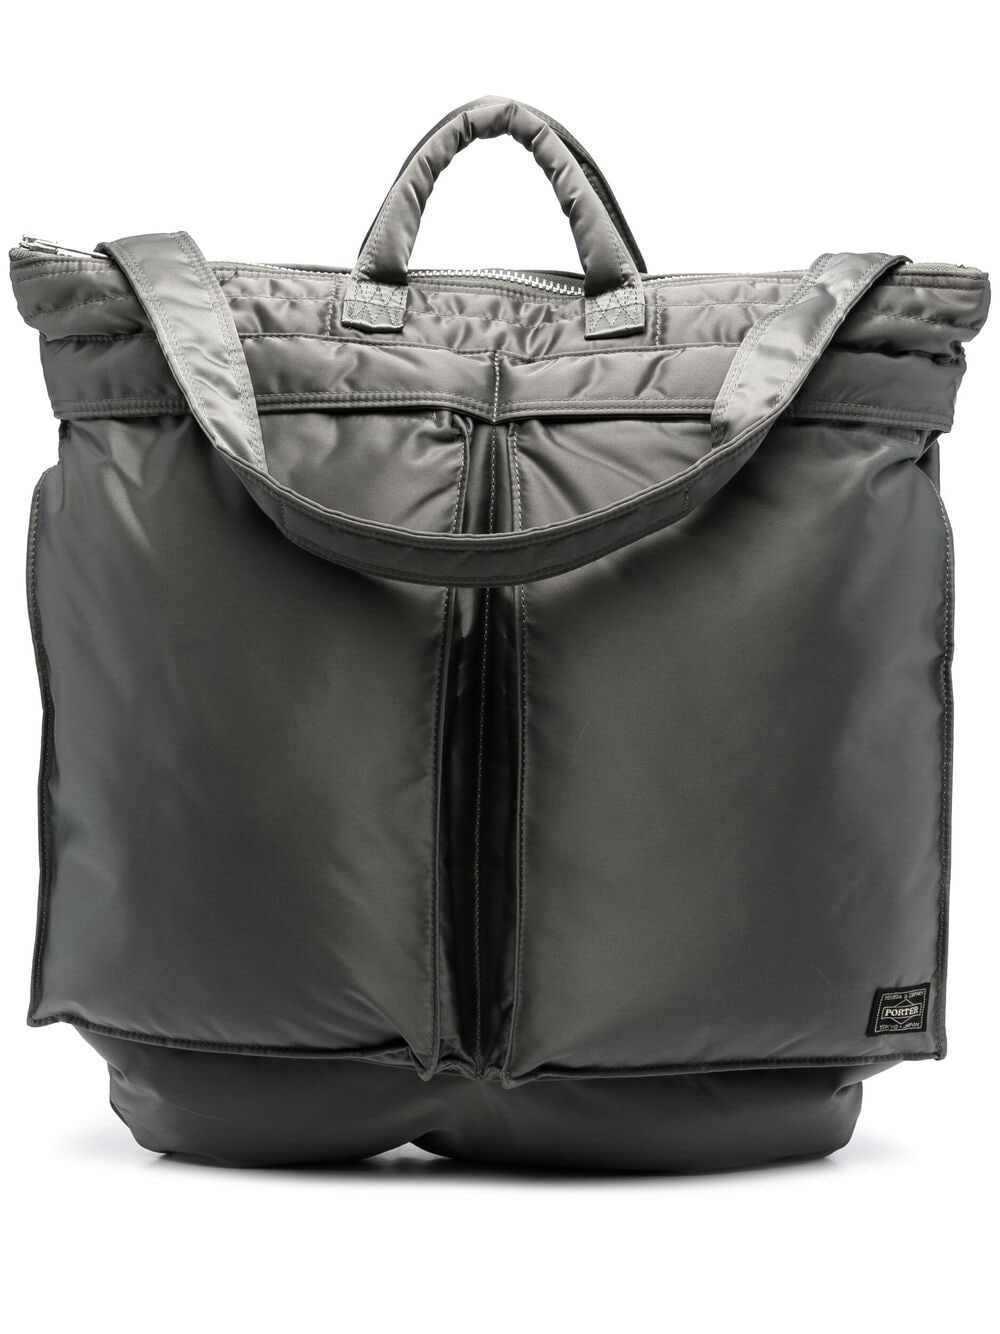 Porter-yoshida & Co 2-way Tote Bag In Grey